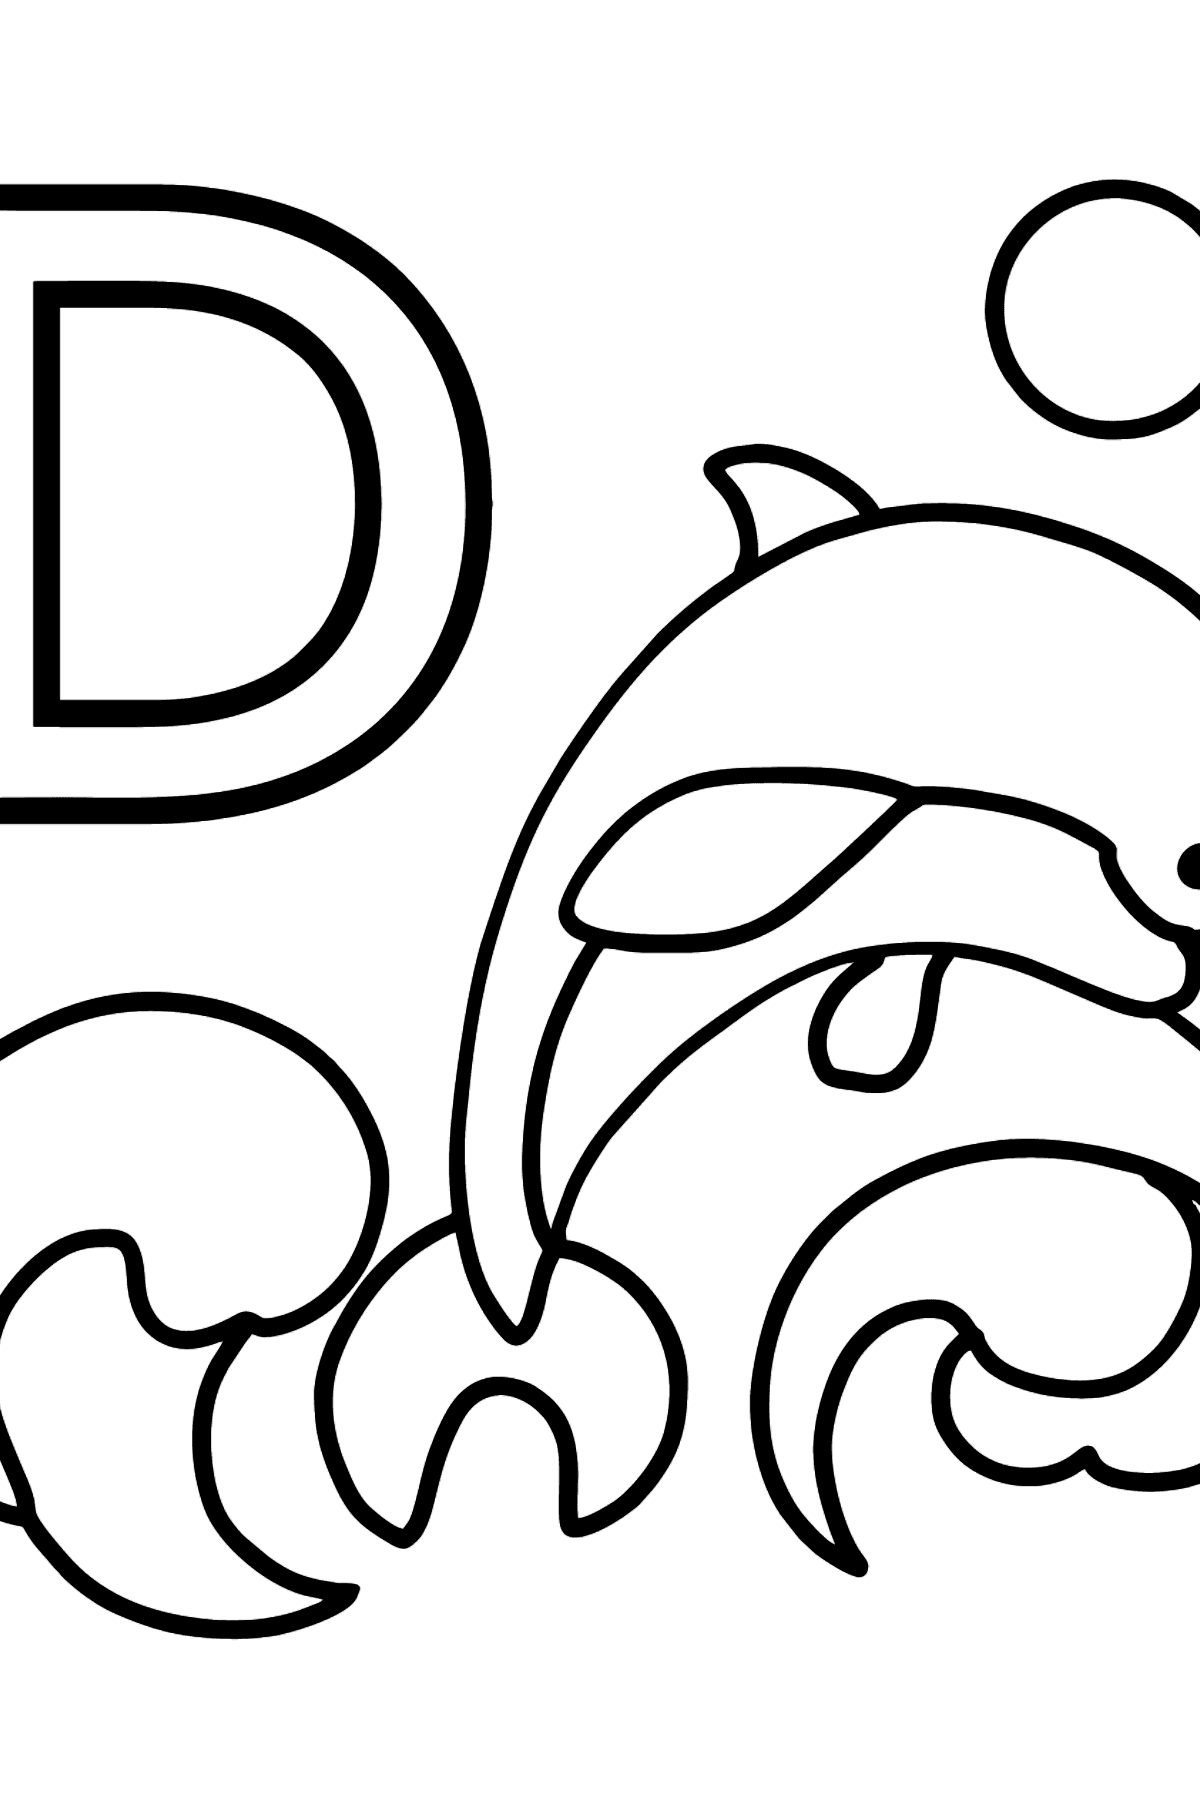 Dibujo de Letra D inglesa para colorear - DOLPHIN - Dibujos para Colorear para Niños